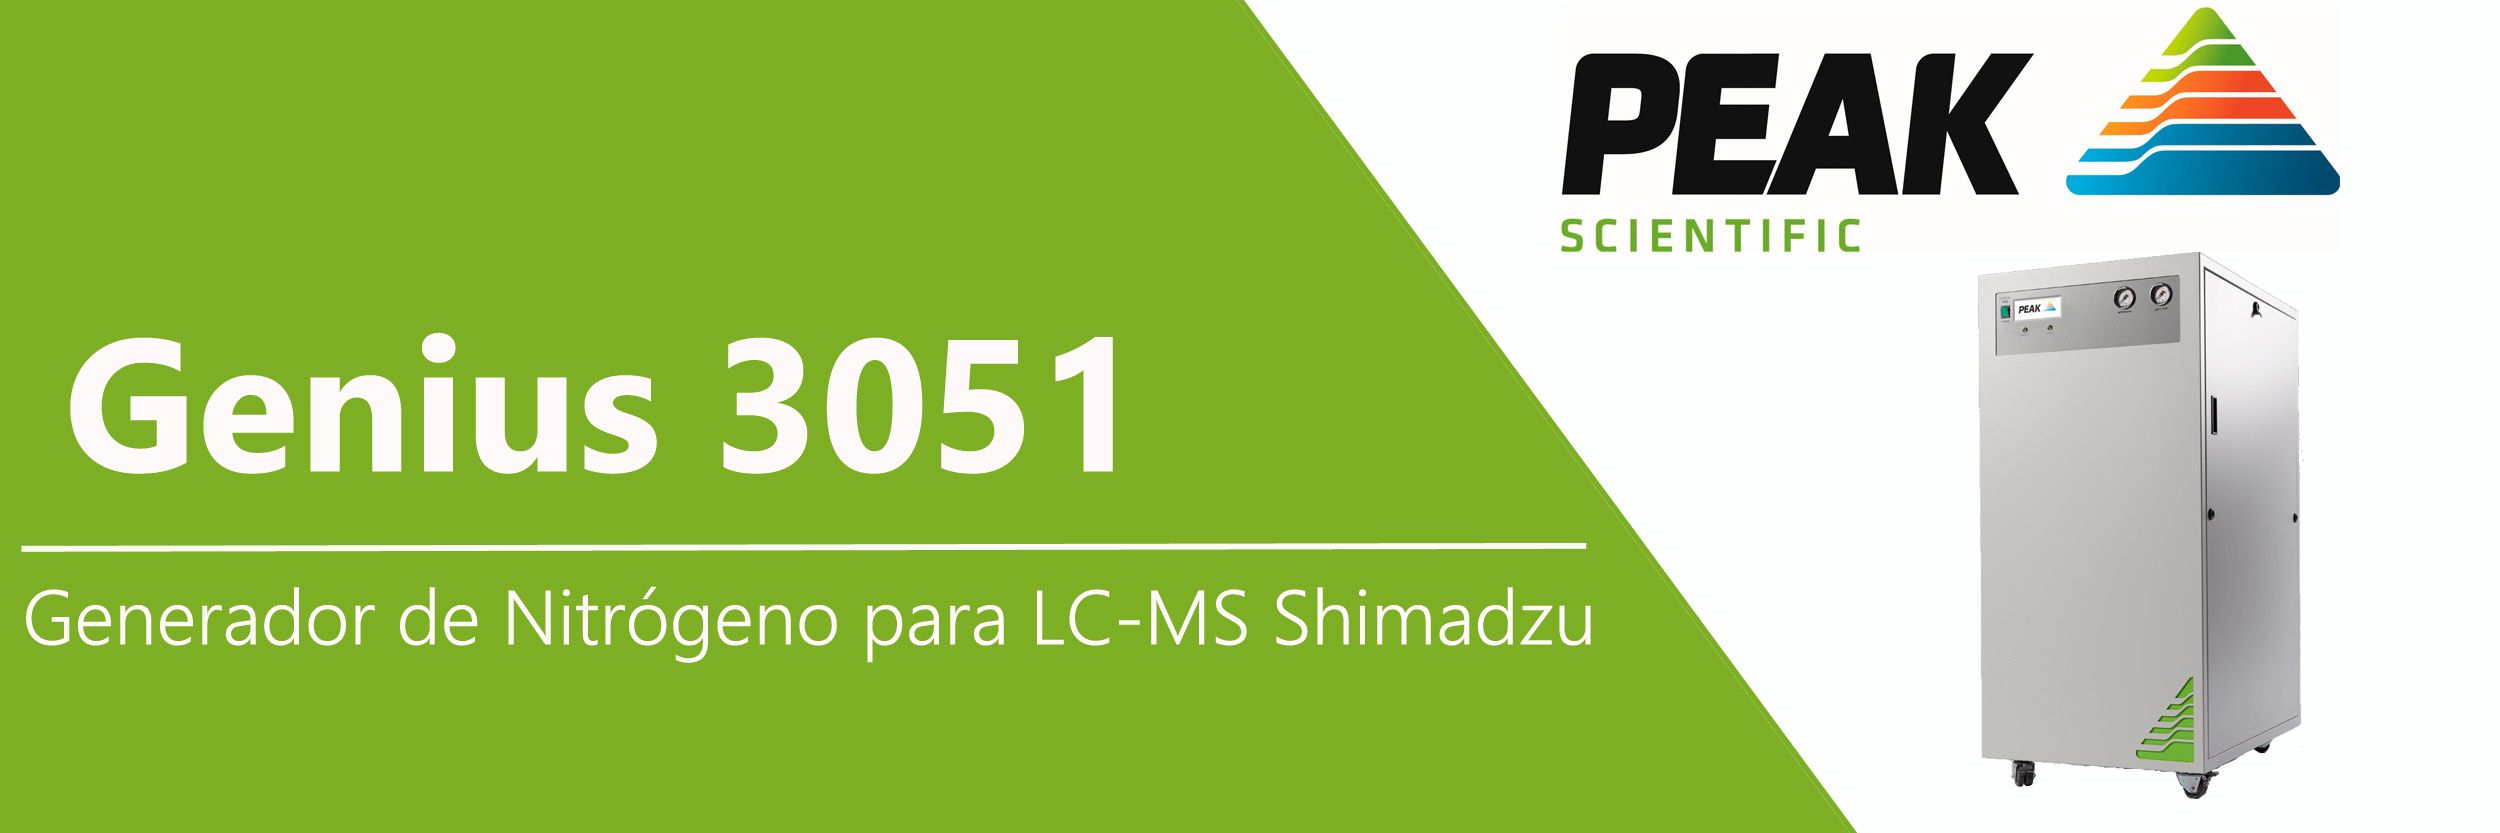 Genius 3051: generador de Nitrógeno para LC-MS Shimadzu